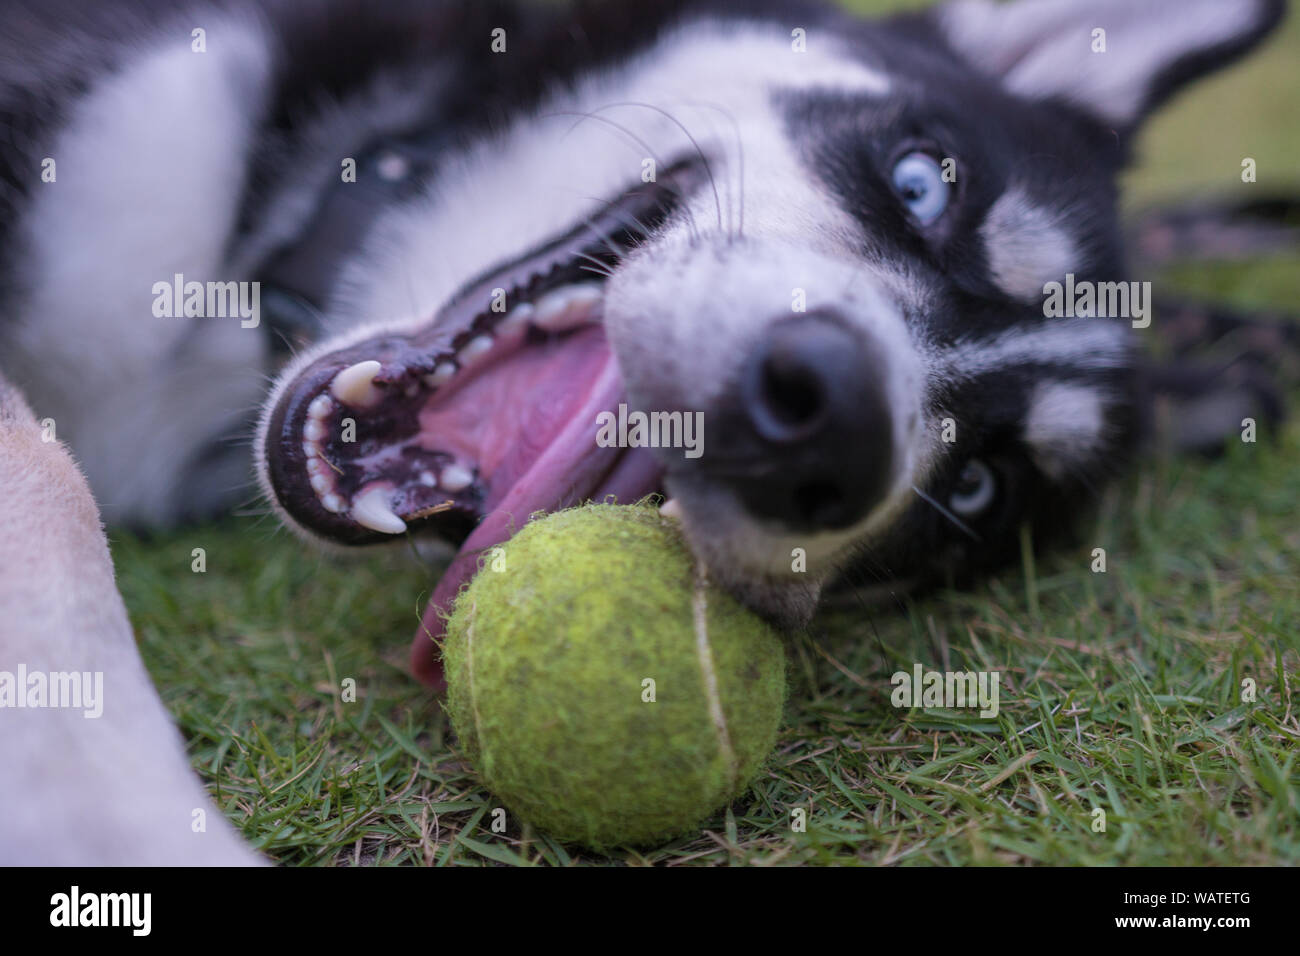 Husky ont une journée de plaisir avec la balle dans le jardin, d'une journée incroyable et d'avoir du plaisir. Banque D'Images